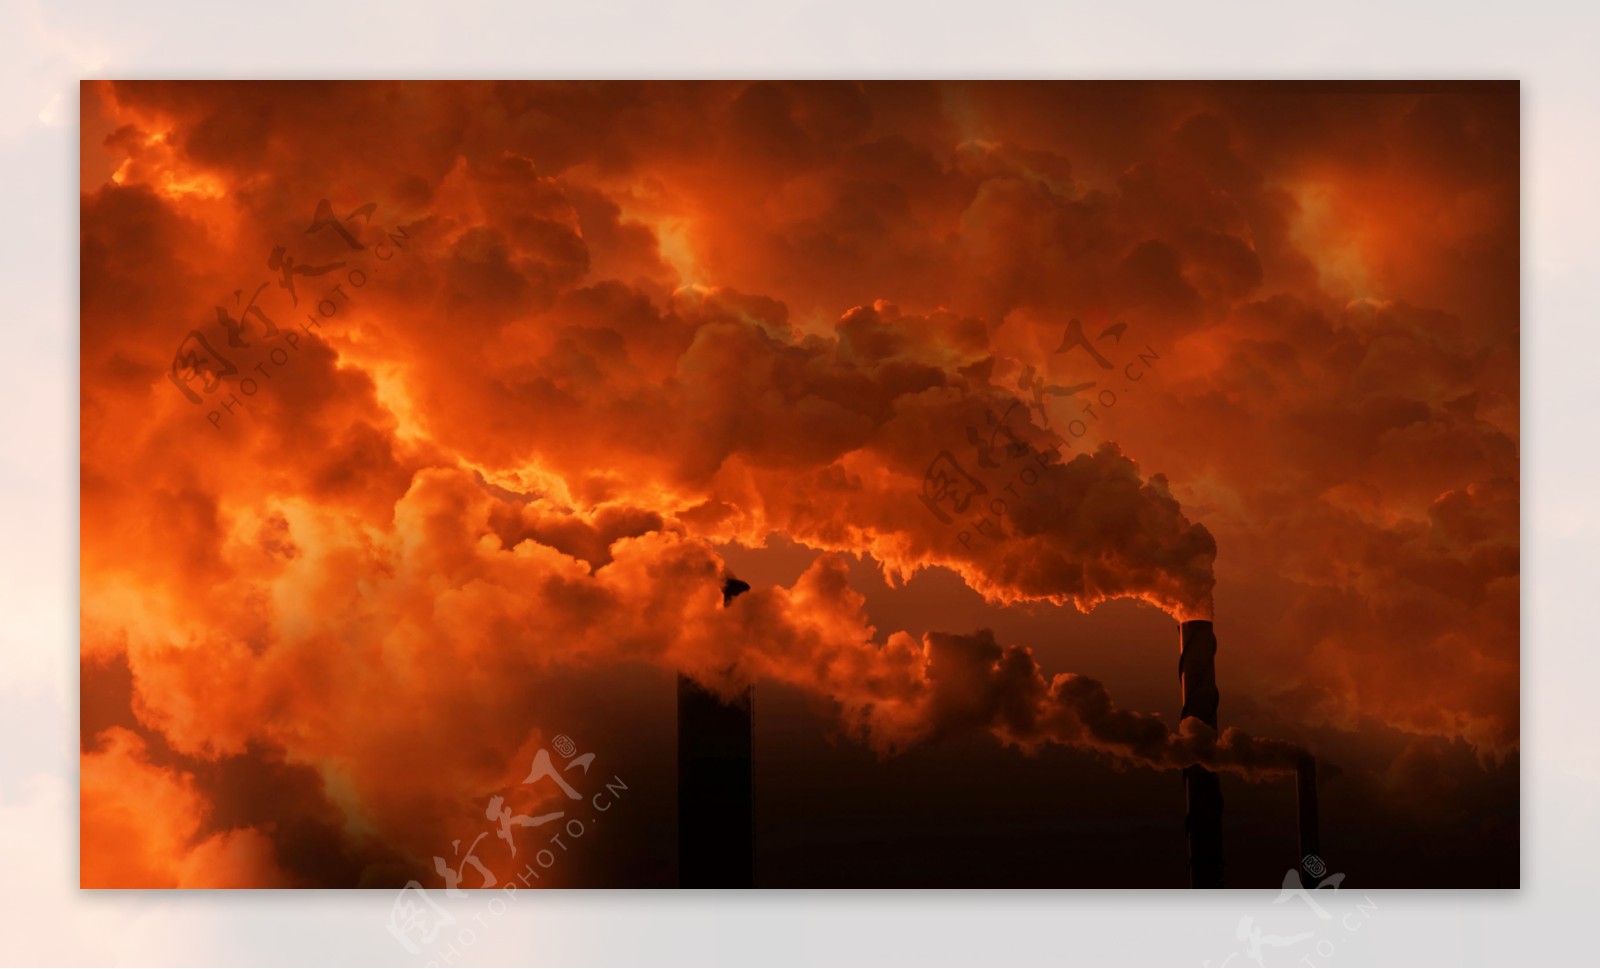 工厂大气污染图片